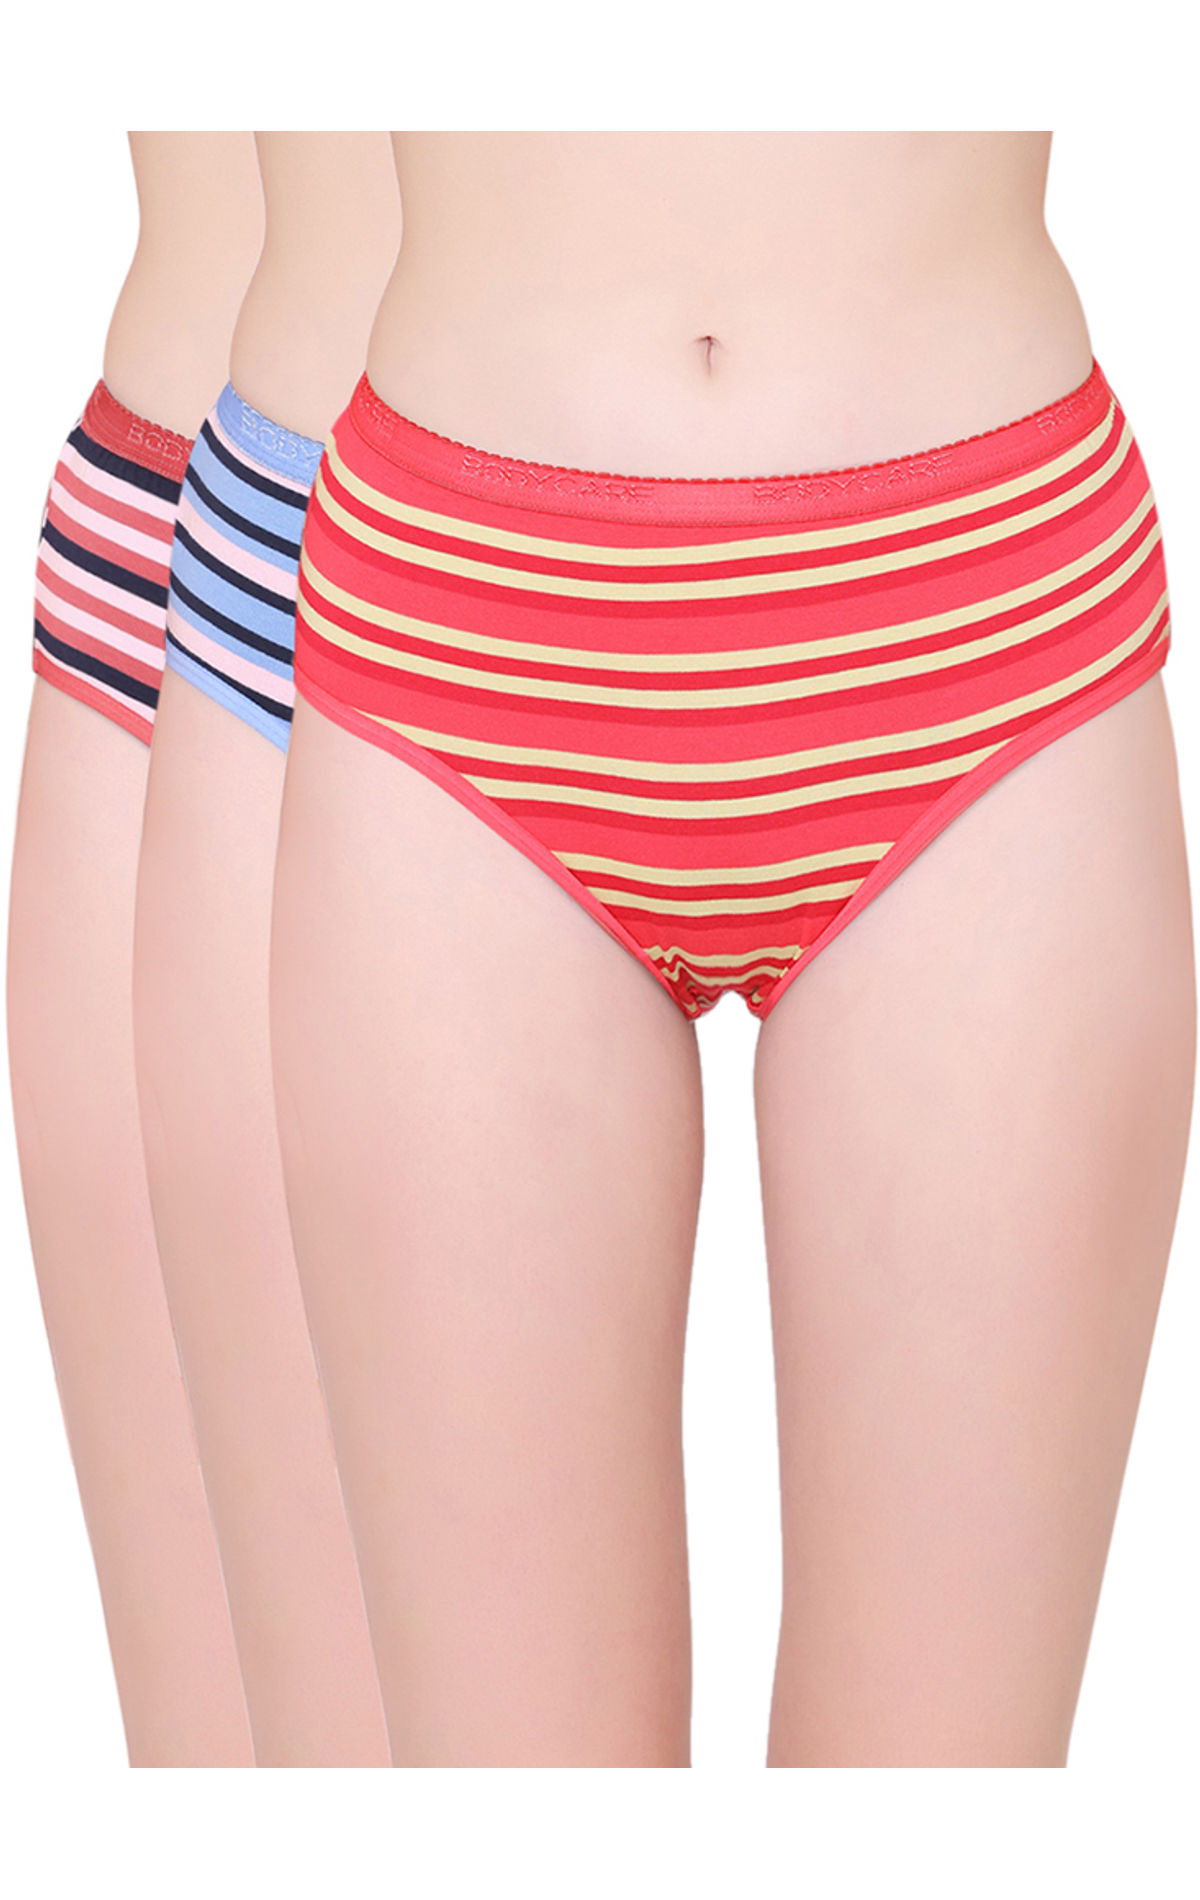 Womens Cotton Briefs - Comfort Band Leg Underwear - 3 Pack